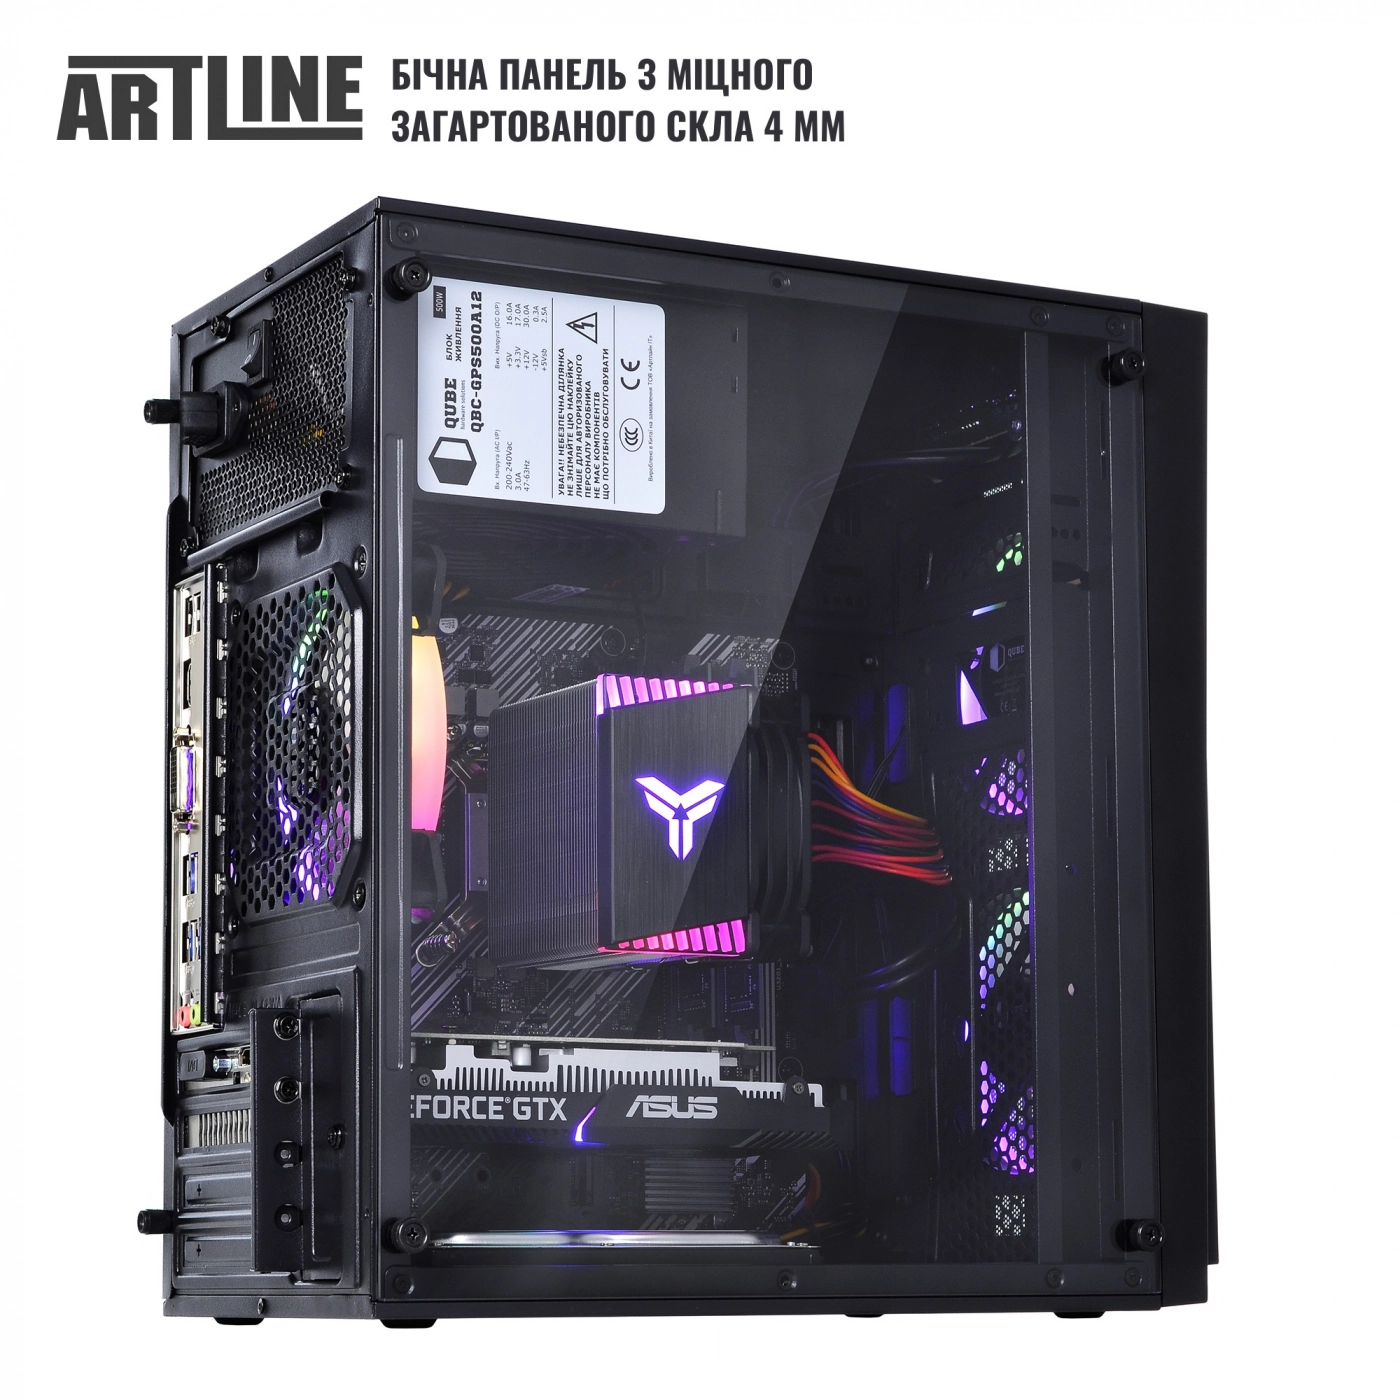 Купить Компьютер ARTLINE Gaming X46v37 - фото 4